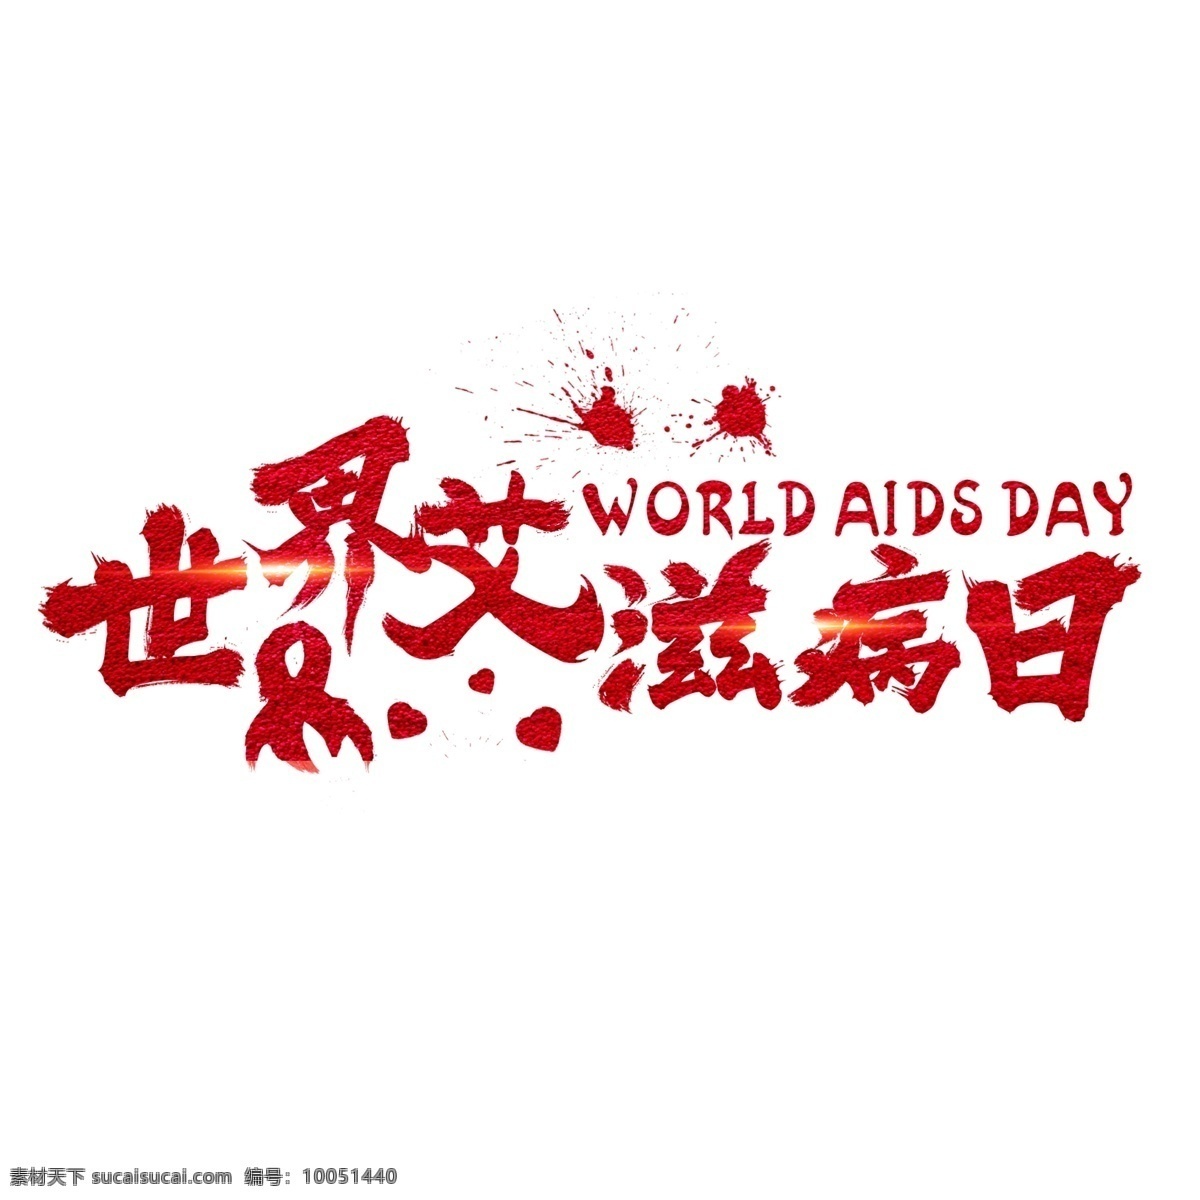 世界 艾滋病 日 红色 手 写字 艾滋病日 红丝带 字体设计 创意字体 艺术字 世界艾滋病日 文字设计 装饰艺术字